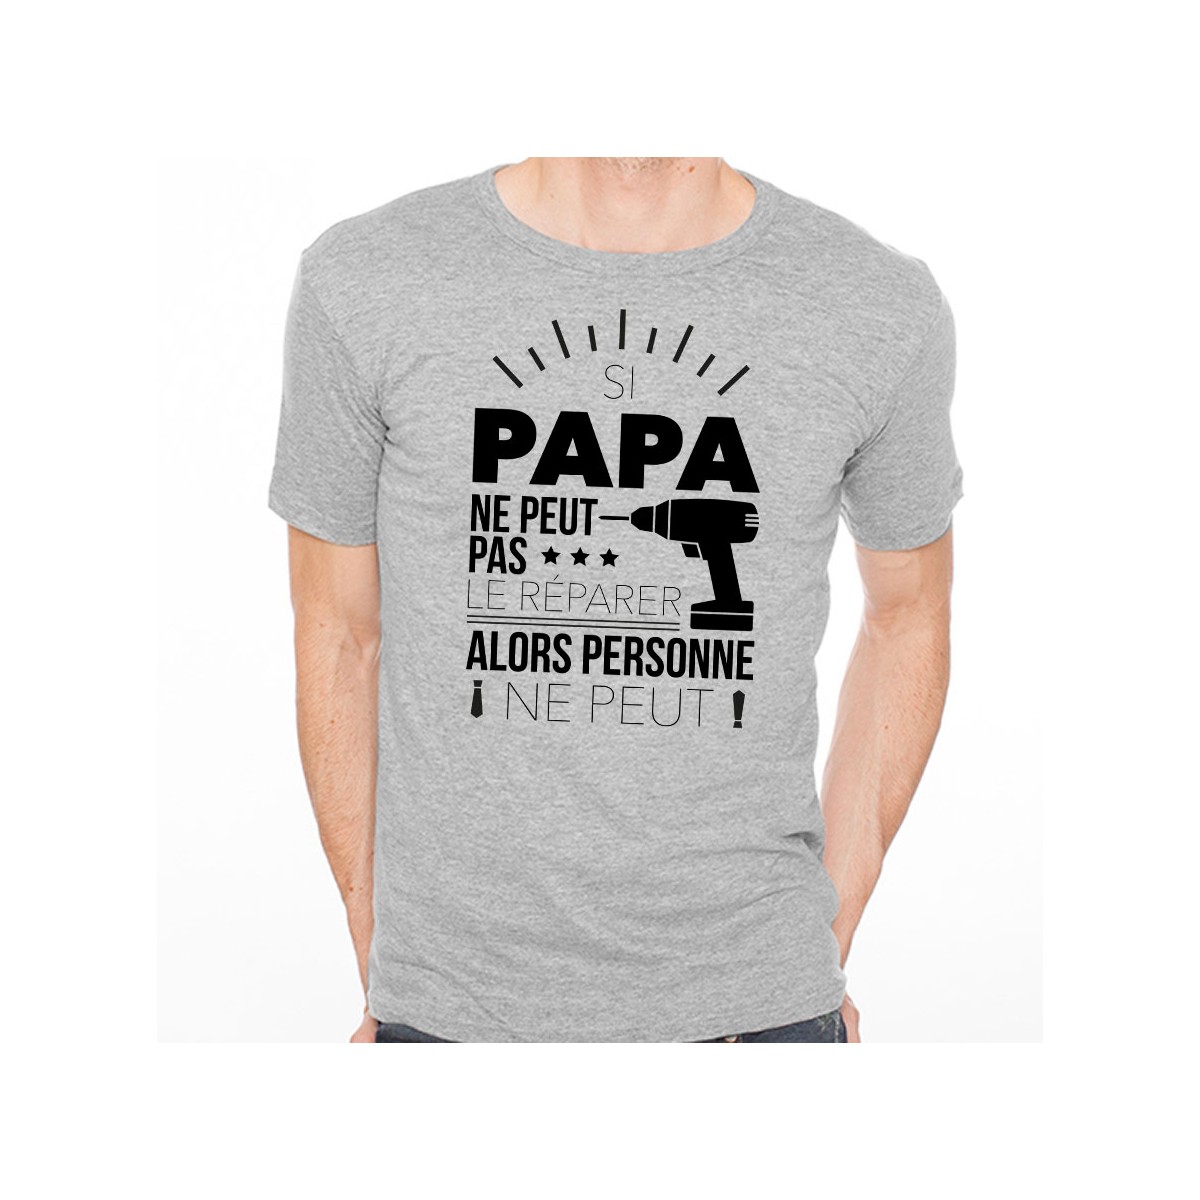 T-shirt Si papa ne peut pas réparer